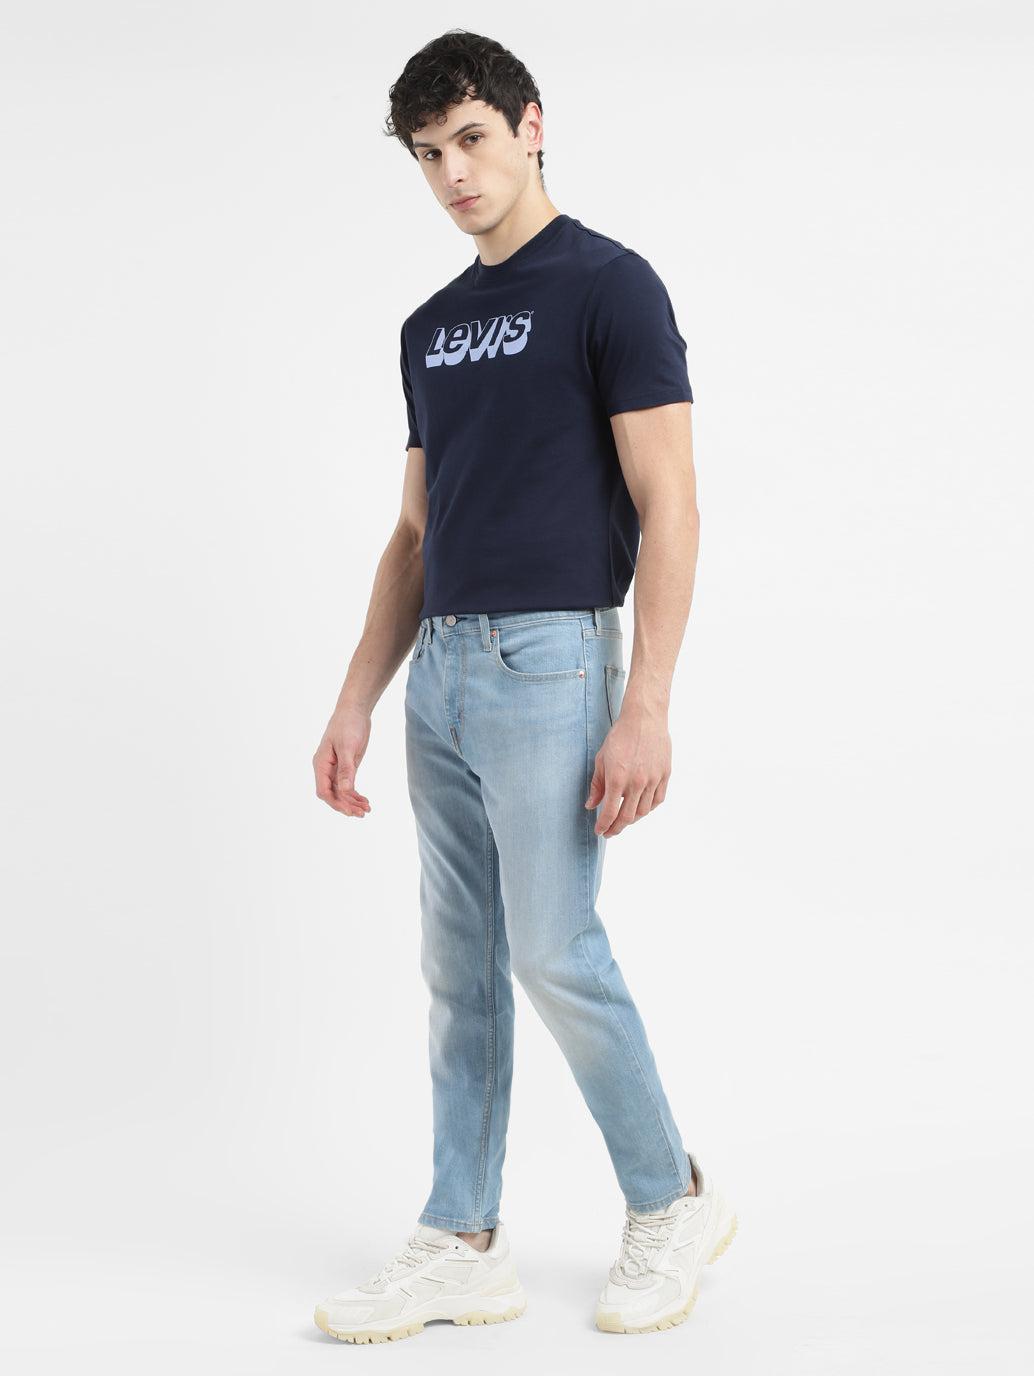 men's-512-light-blue-slim-tapered-fit-jeans